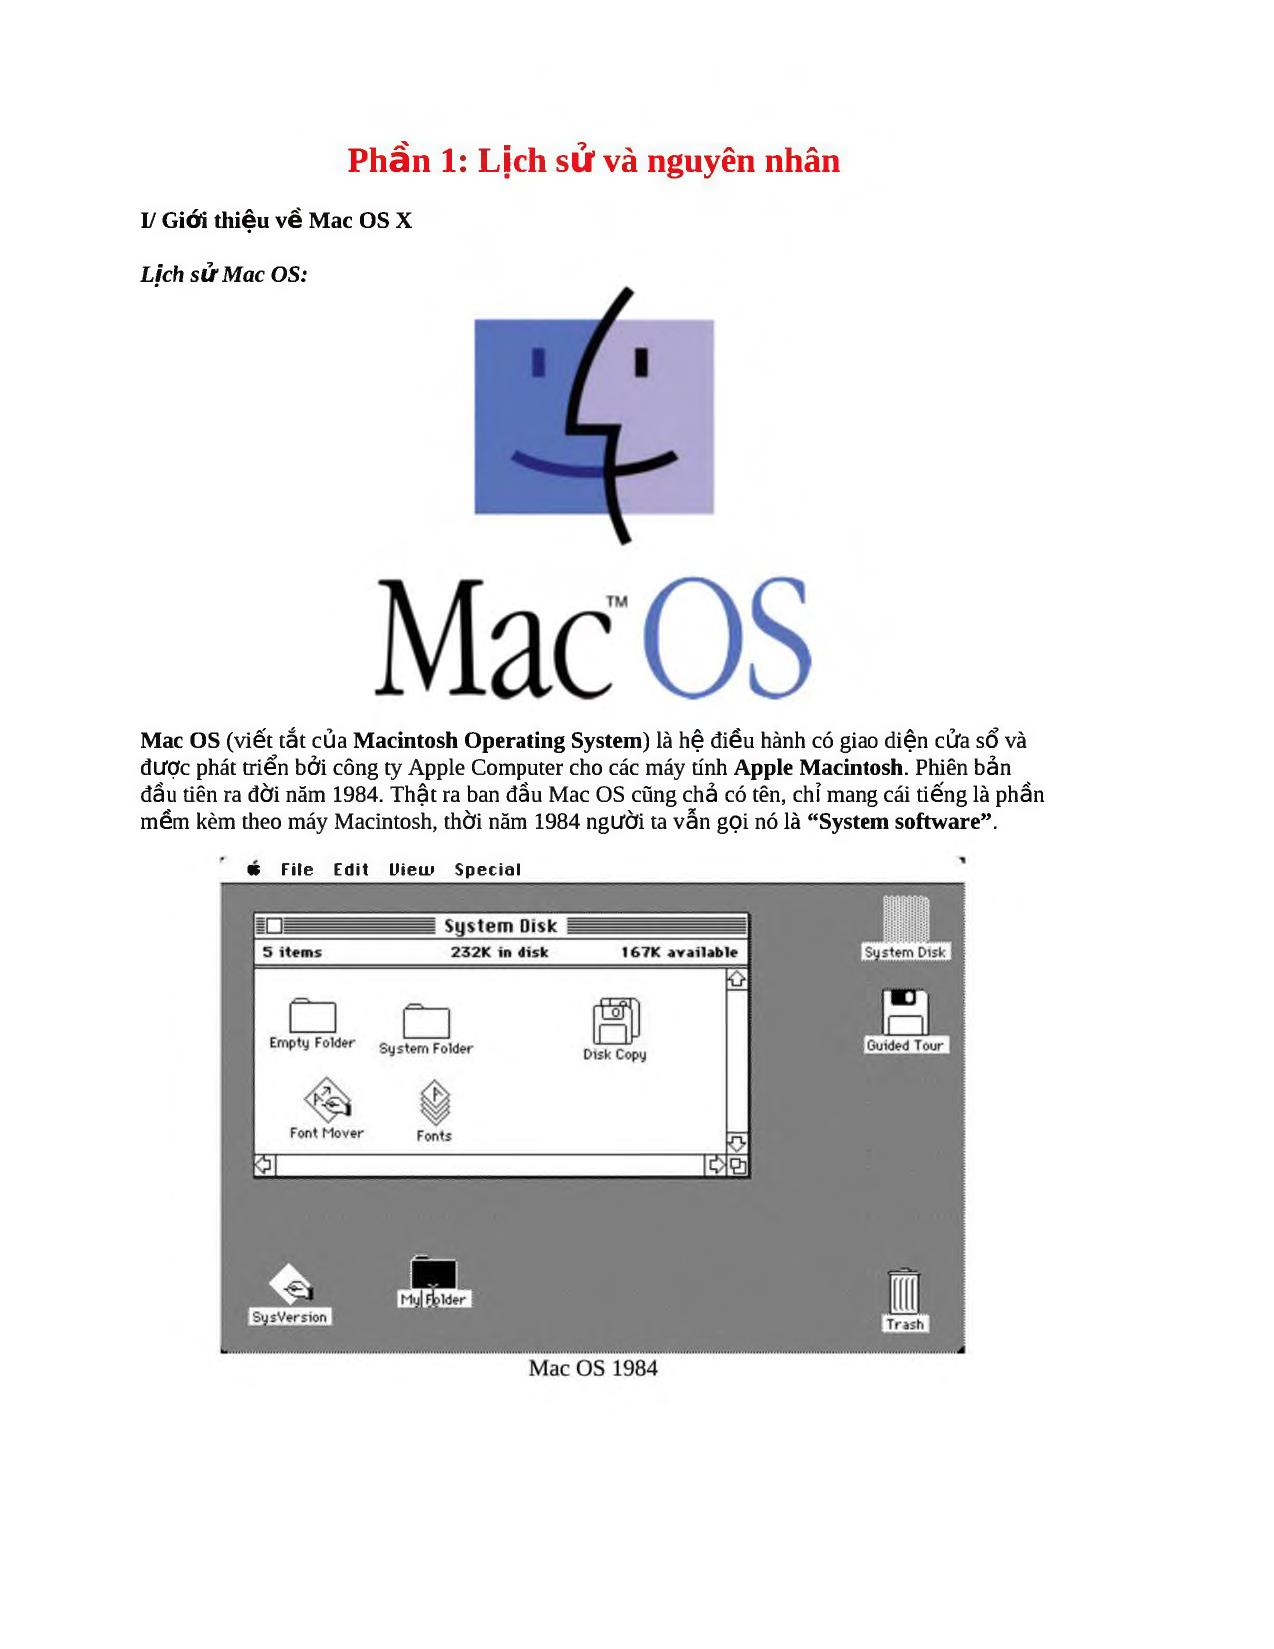 Hướng dẫn cài đặt Mac OS trên PC toàn tập - Phần 1: Lịch sử và nguyên nhân trang 1